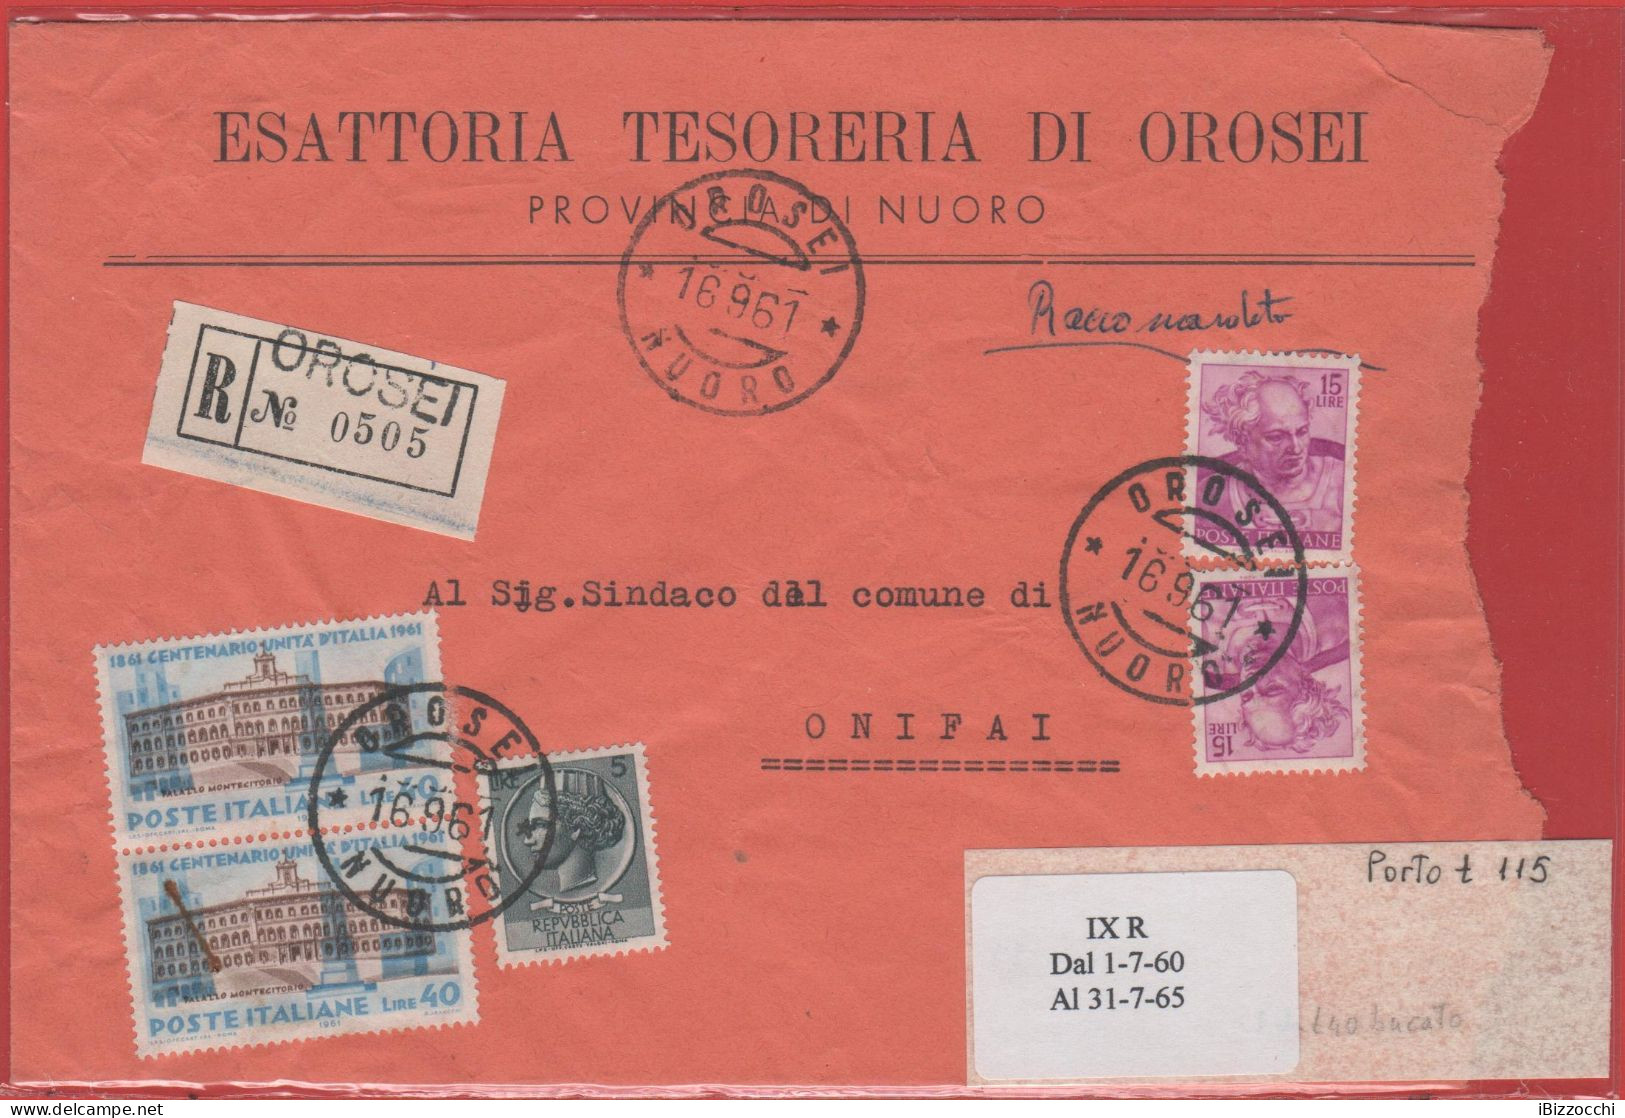 ITALIA - Storia Postale Repubblica - 1961 - 2x 40 Centenario Dell'unità D'Italia + 5 Siracusana + 2x 15 Michelangiolesca - 1961-70: Poststempel